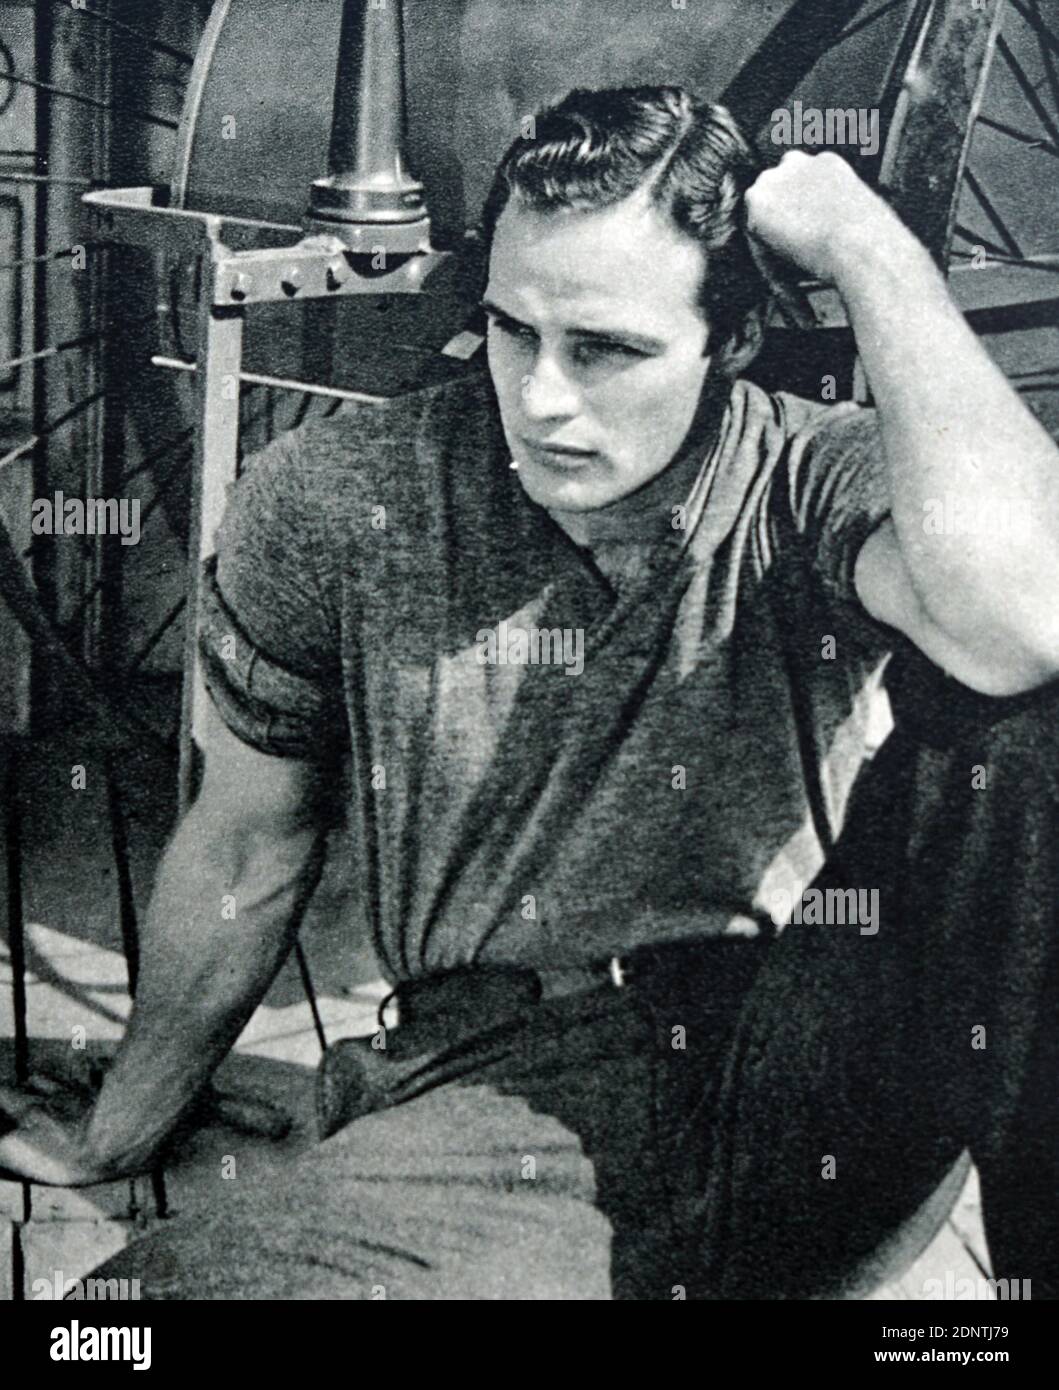 Foto von Marlon Brando (1924-2004), einem amerikanischen Schauspieler und Regisseur. Stockfoto